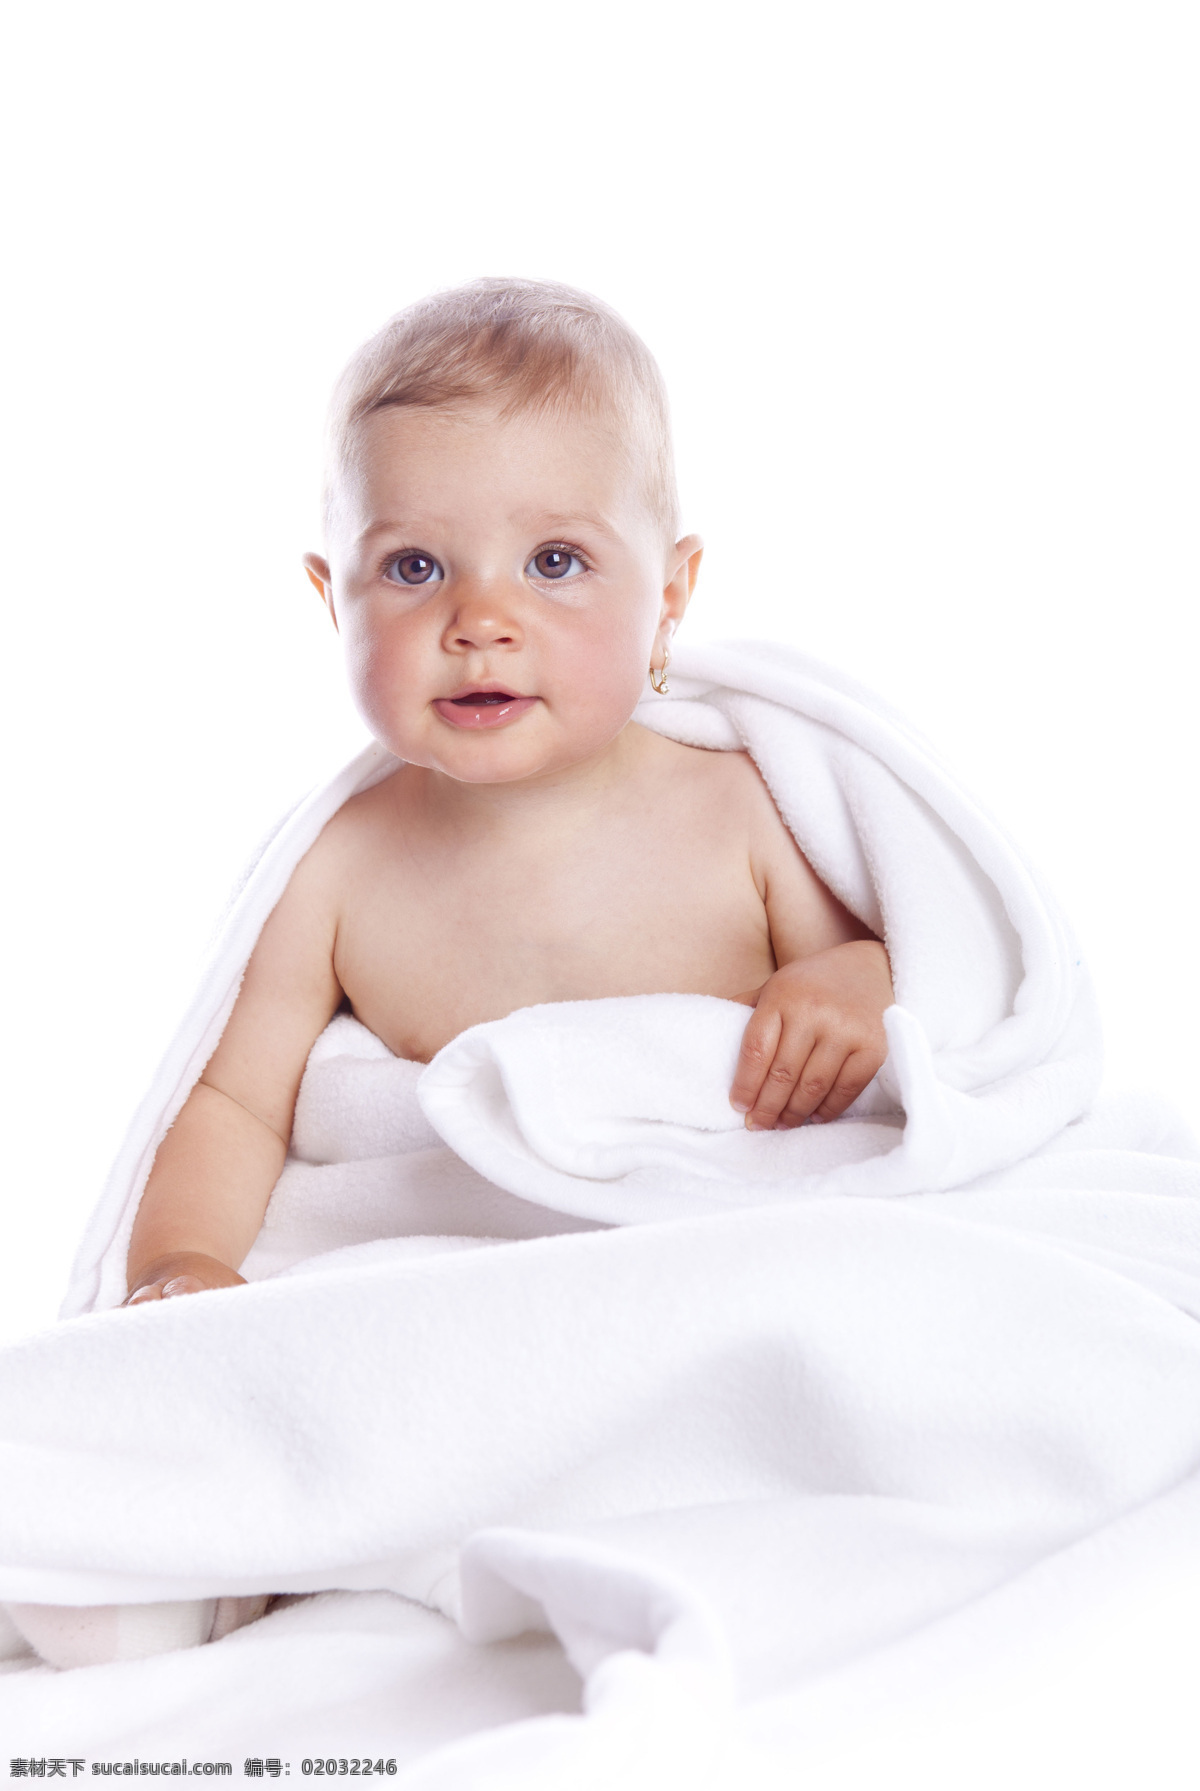 国外 可爱 婴儿 高清 国外人物素材 可爱婴儿 男婴图片 高清图片 婴儿图片 白色